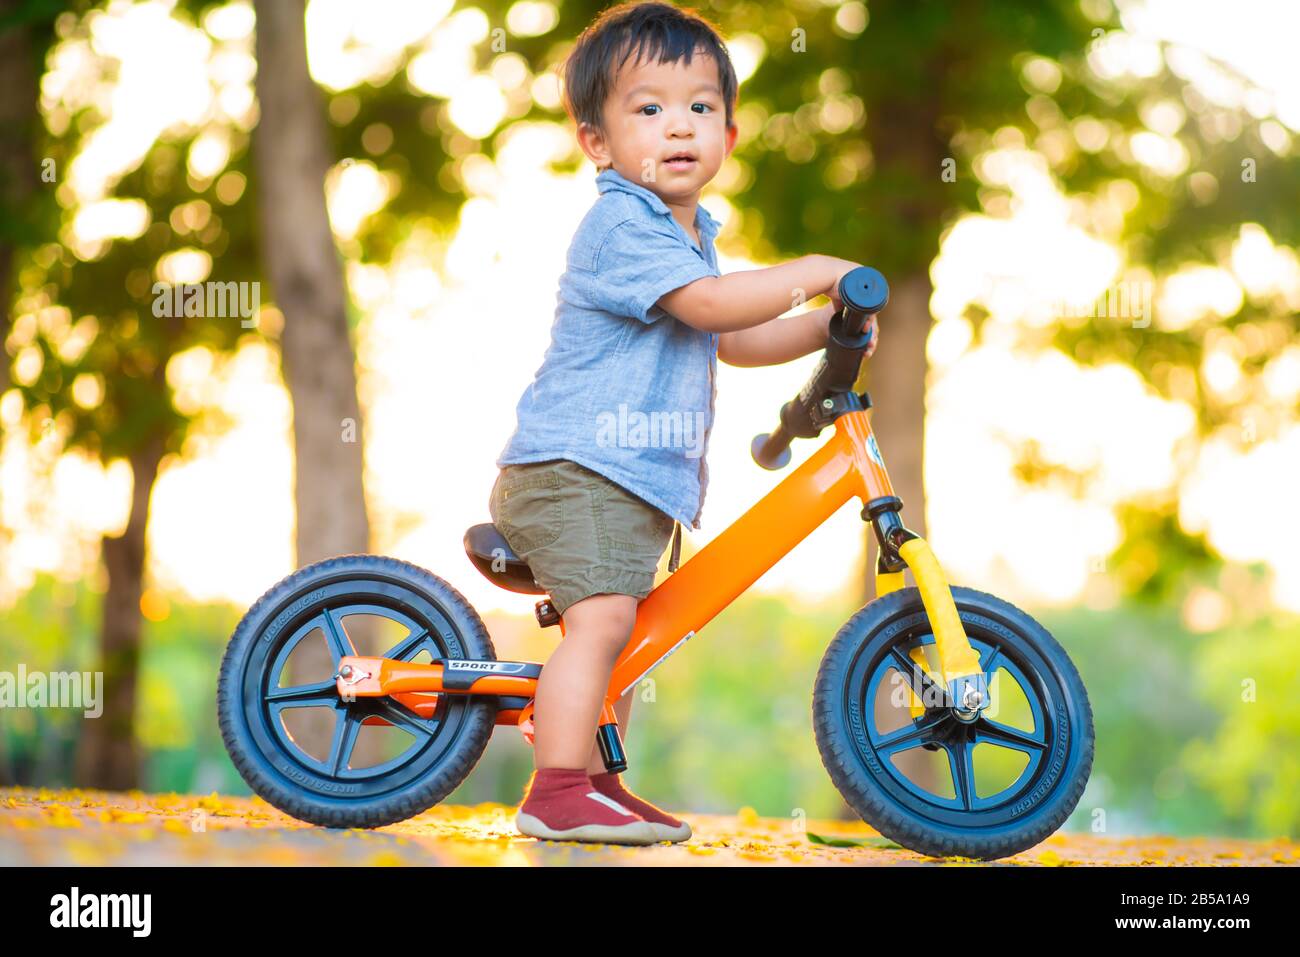 balance bike for 2 year old boy